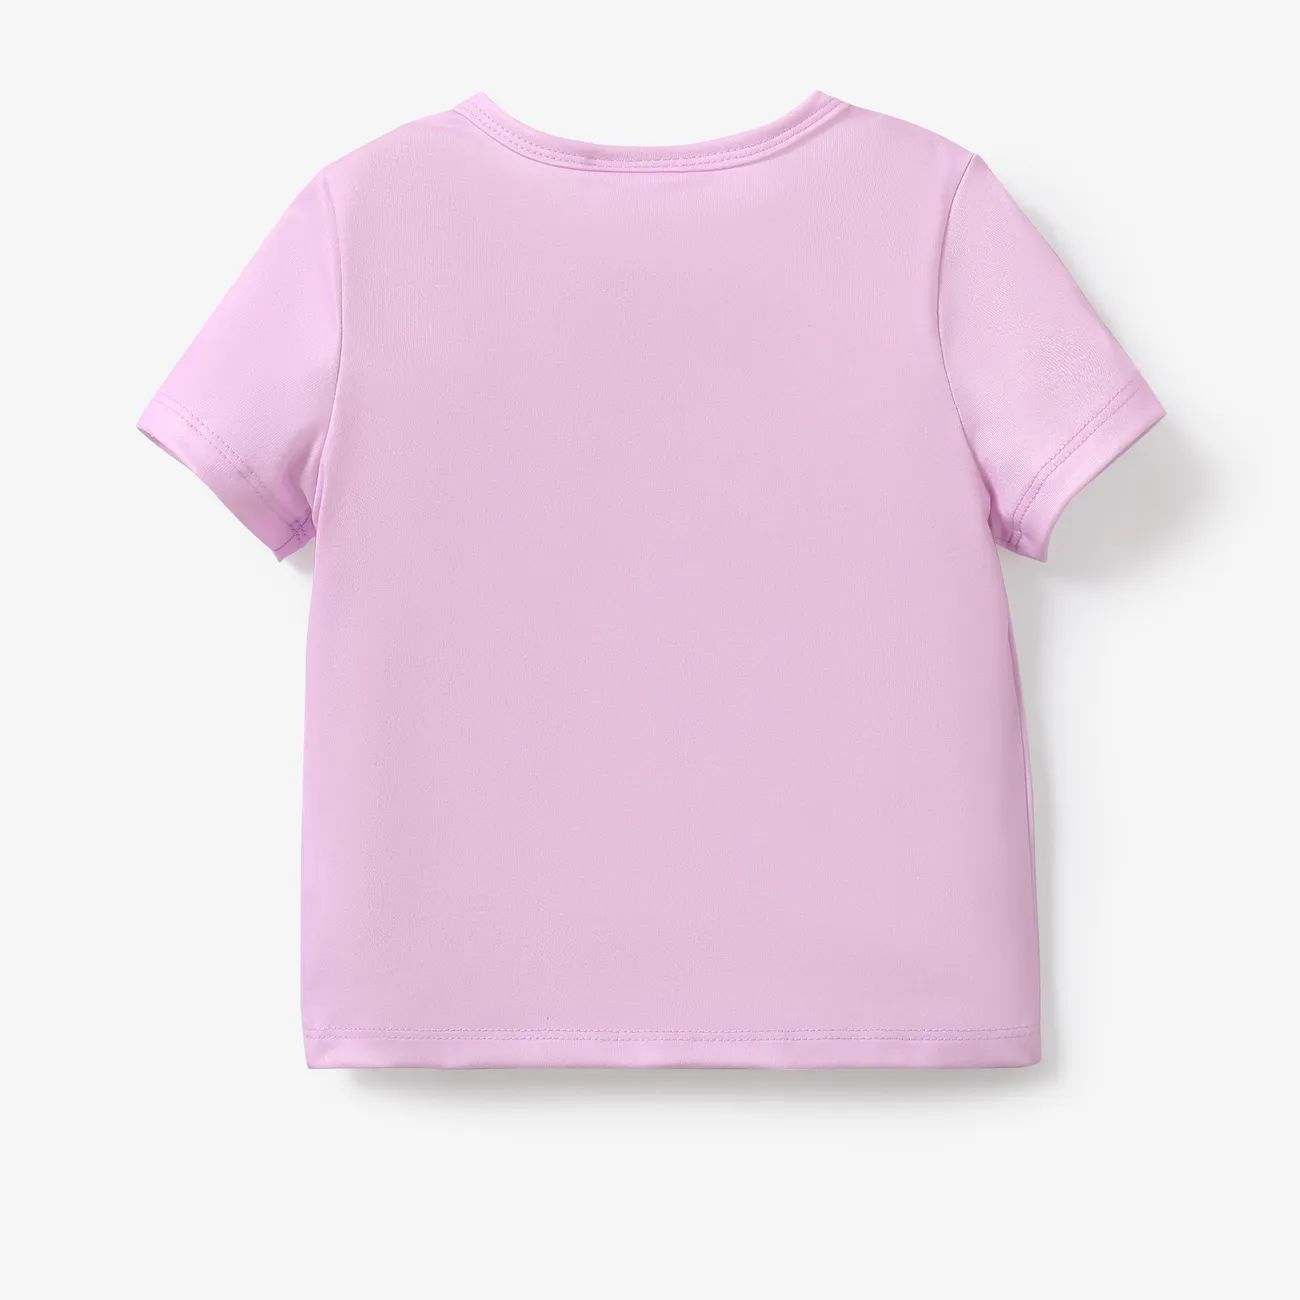 Helfer auf vier Pfoten Ostern Unisex Kindlich T-Shirts helles lila big image 1